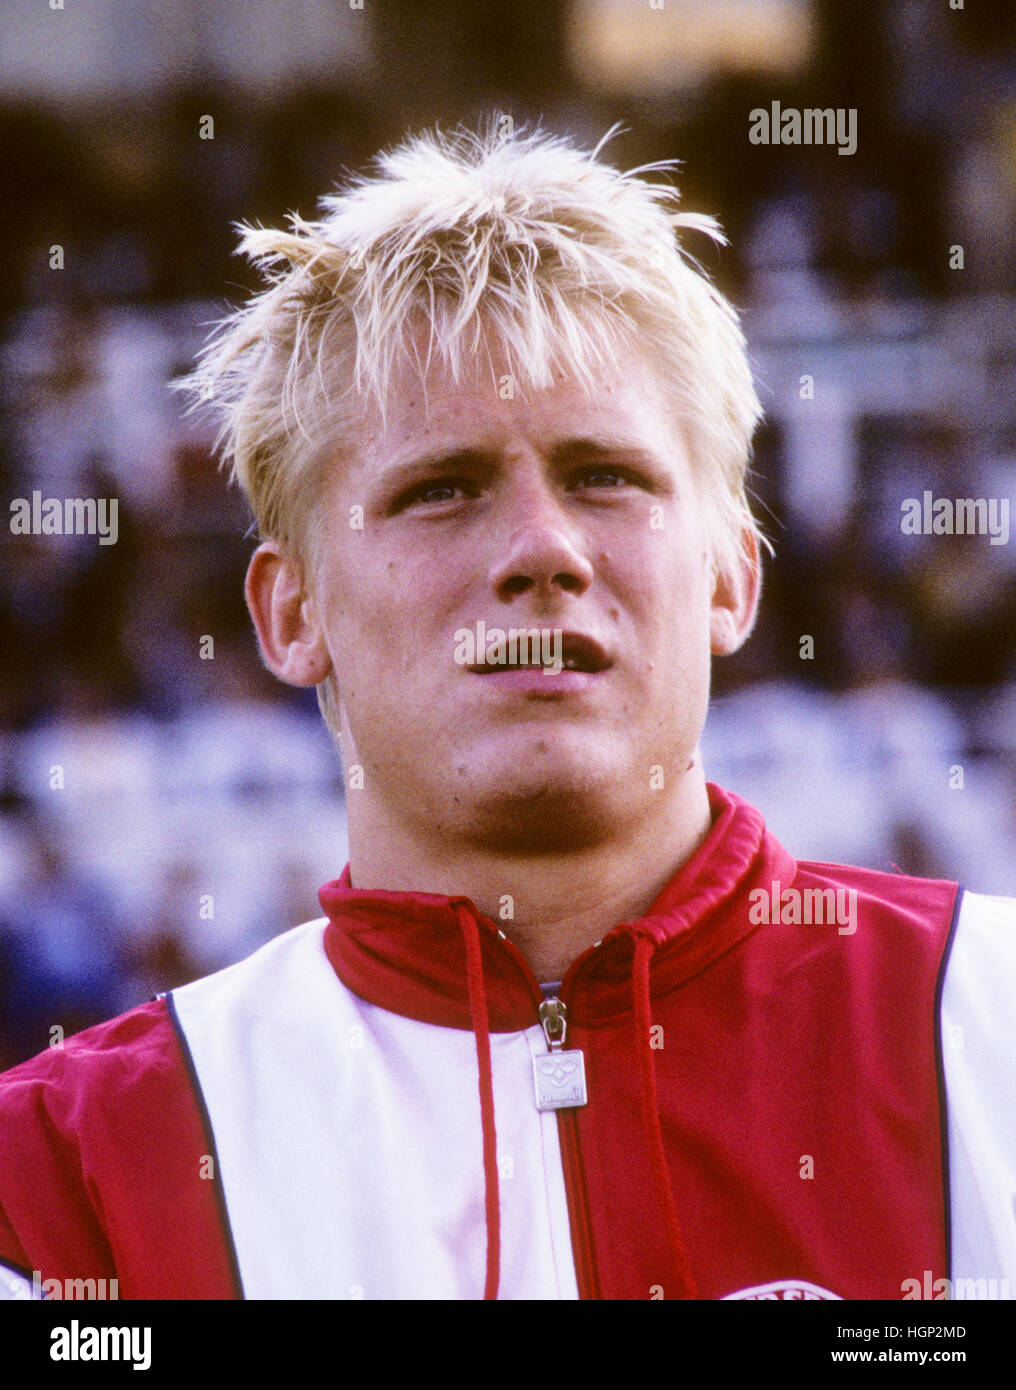 PETER SCHMEICHEL joueur de football danois, gardien de but, à Manchester  United et l'équipe nationale danoise Photo Stock - Alamy